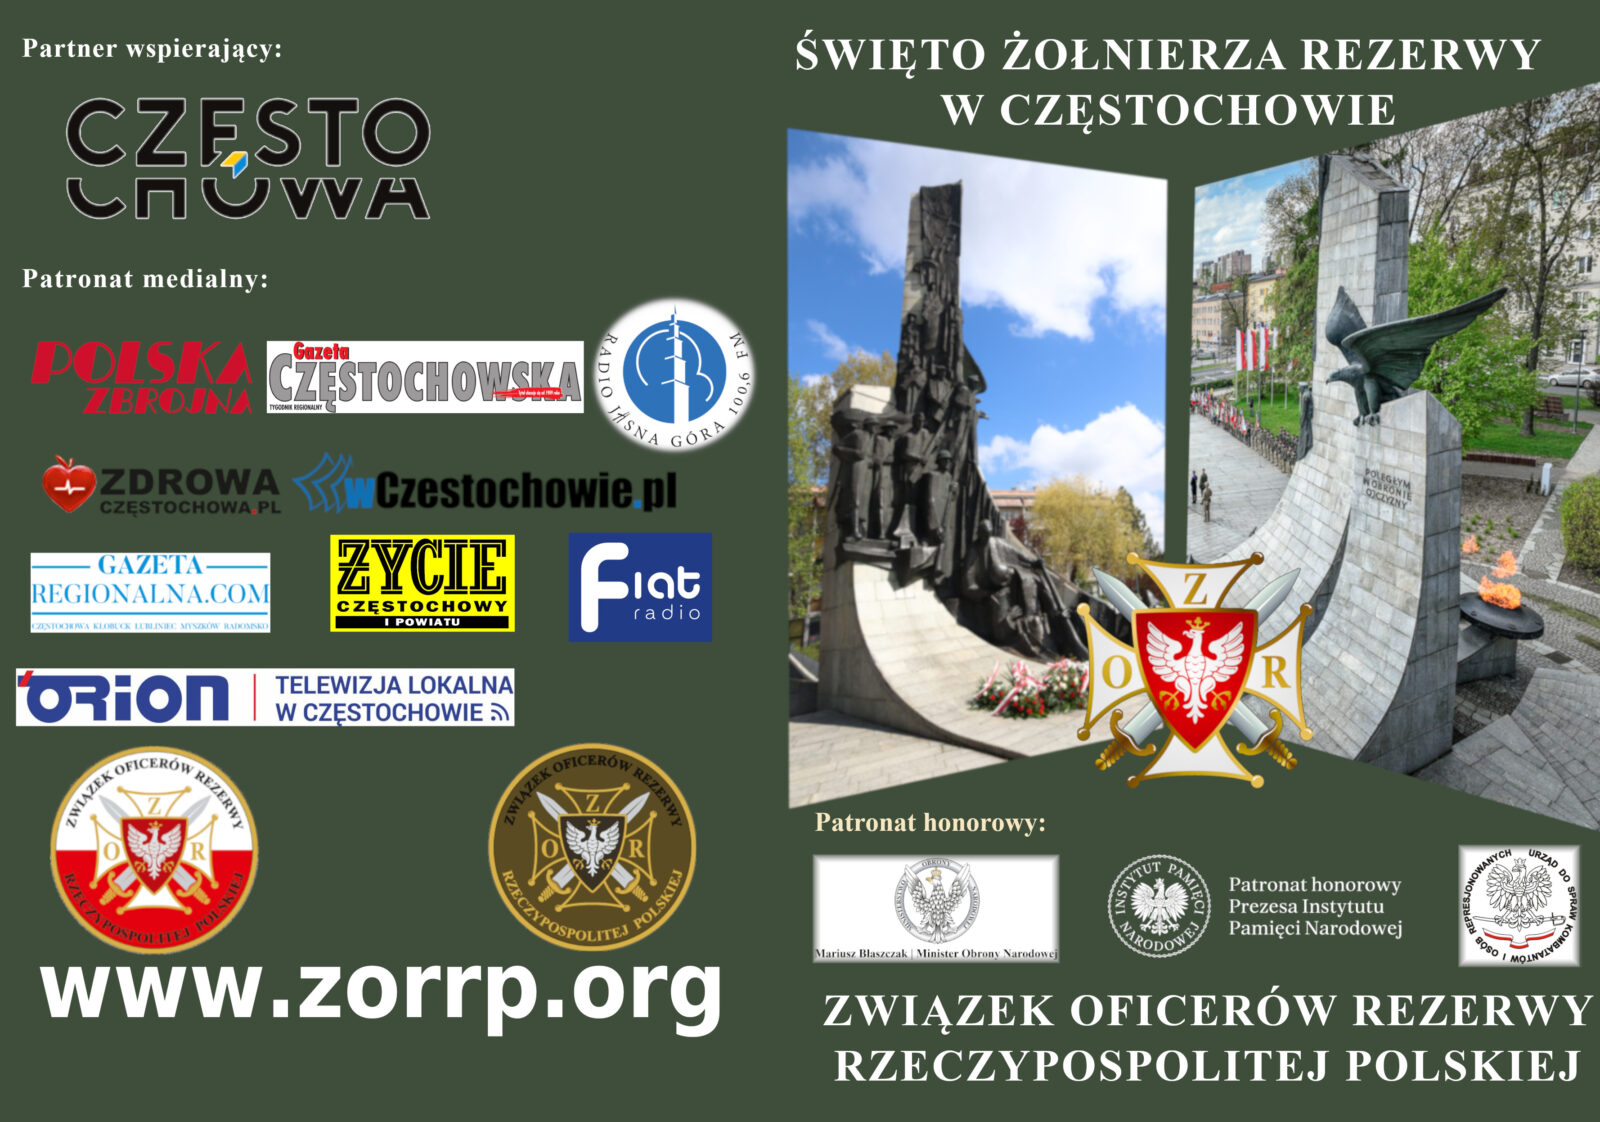 W weekend w Częstochowie odbędzie się Święto Żołnierza Rezerwy organizowane przez ZOR RP 1